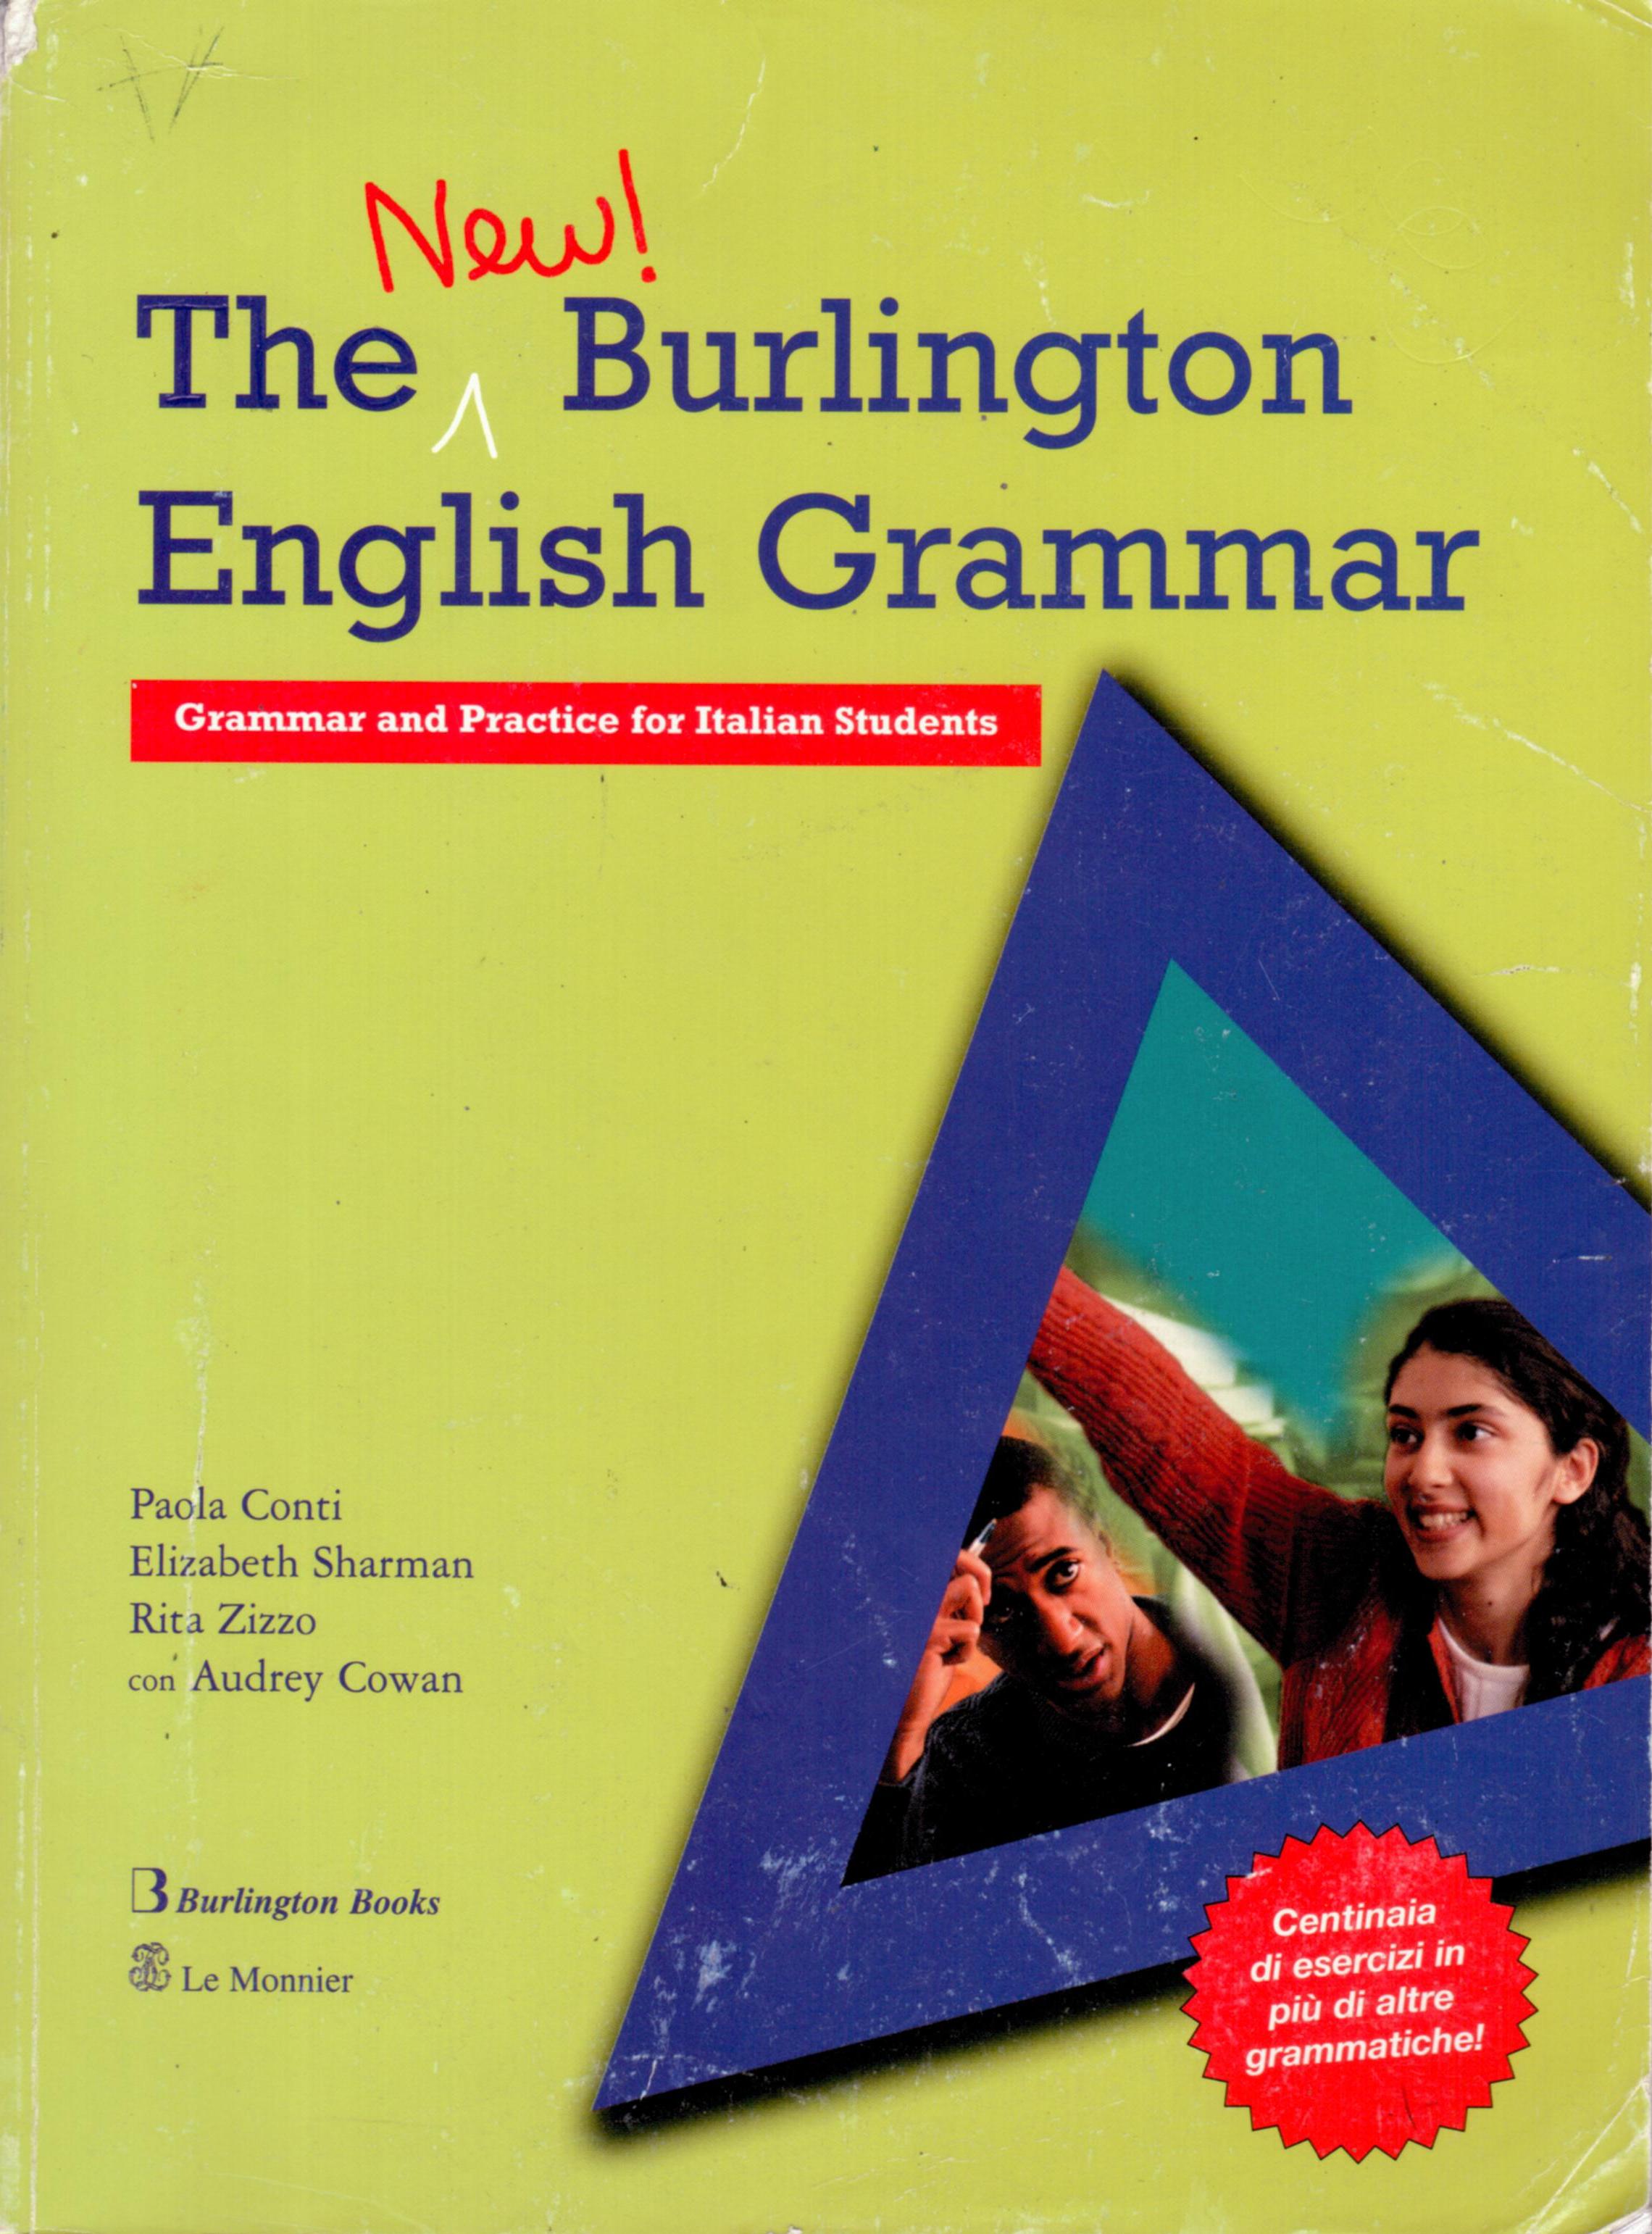 burlington-books-burlington-books-interactive-activ8-british-culture-class-come-along-on-his